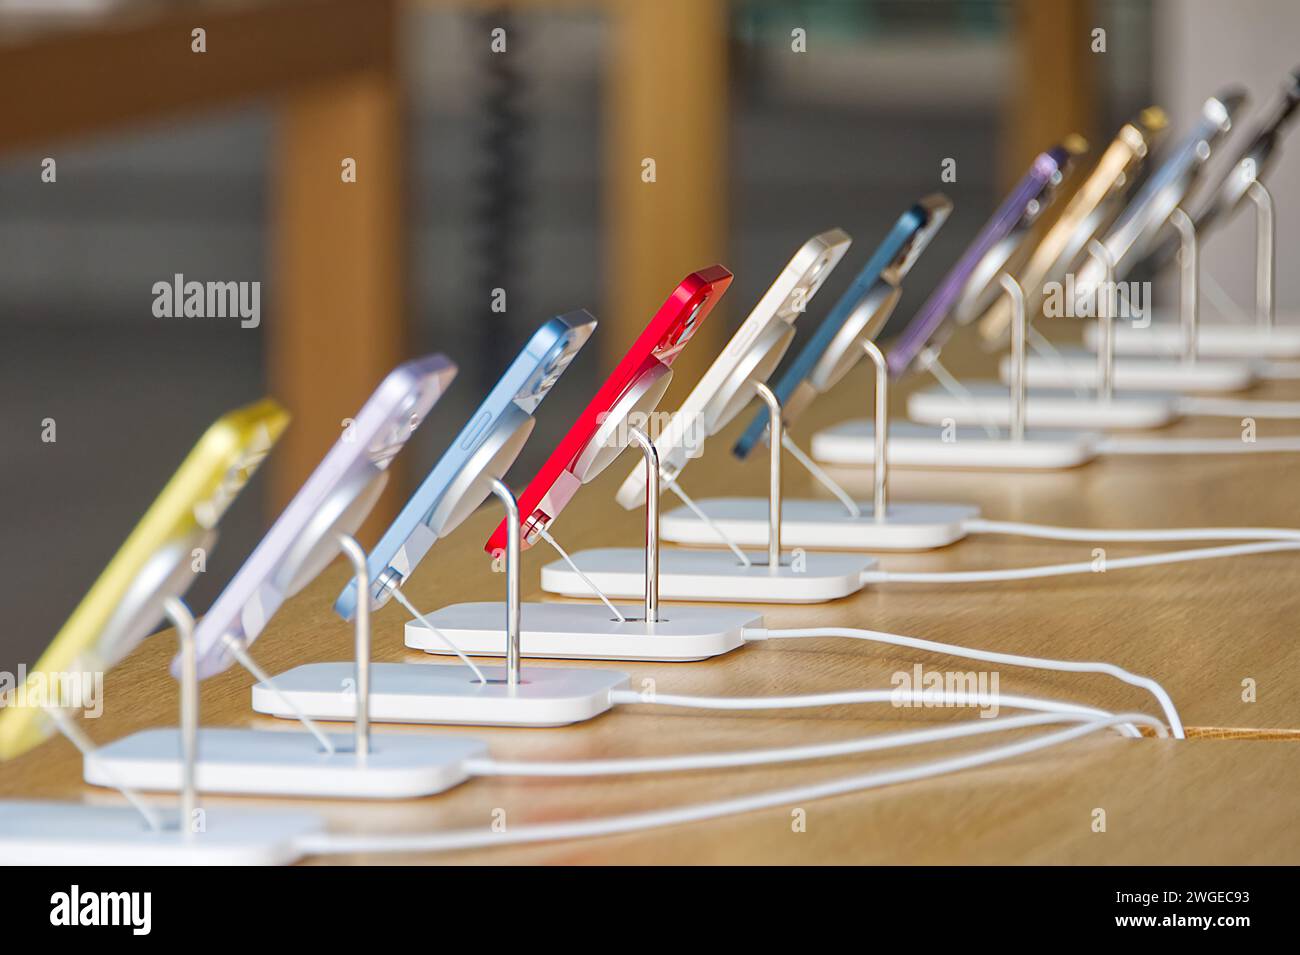 Beaucoup des derniers modèles de téléphones mobiles de différentes couleurs disposés dans la salle d'exposition dans le magasin Banque D'Images